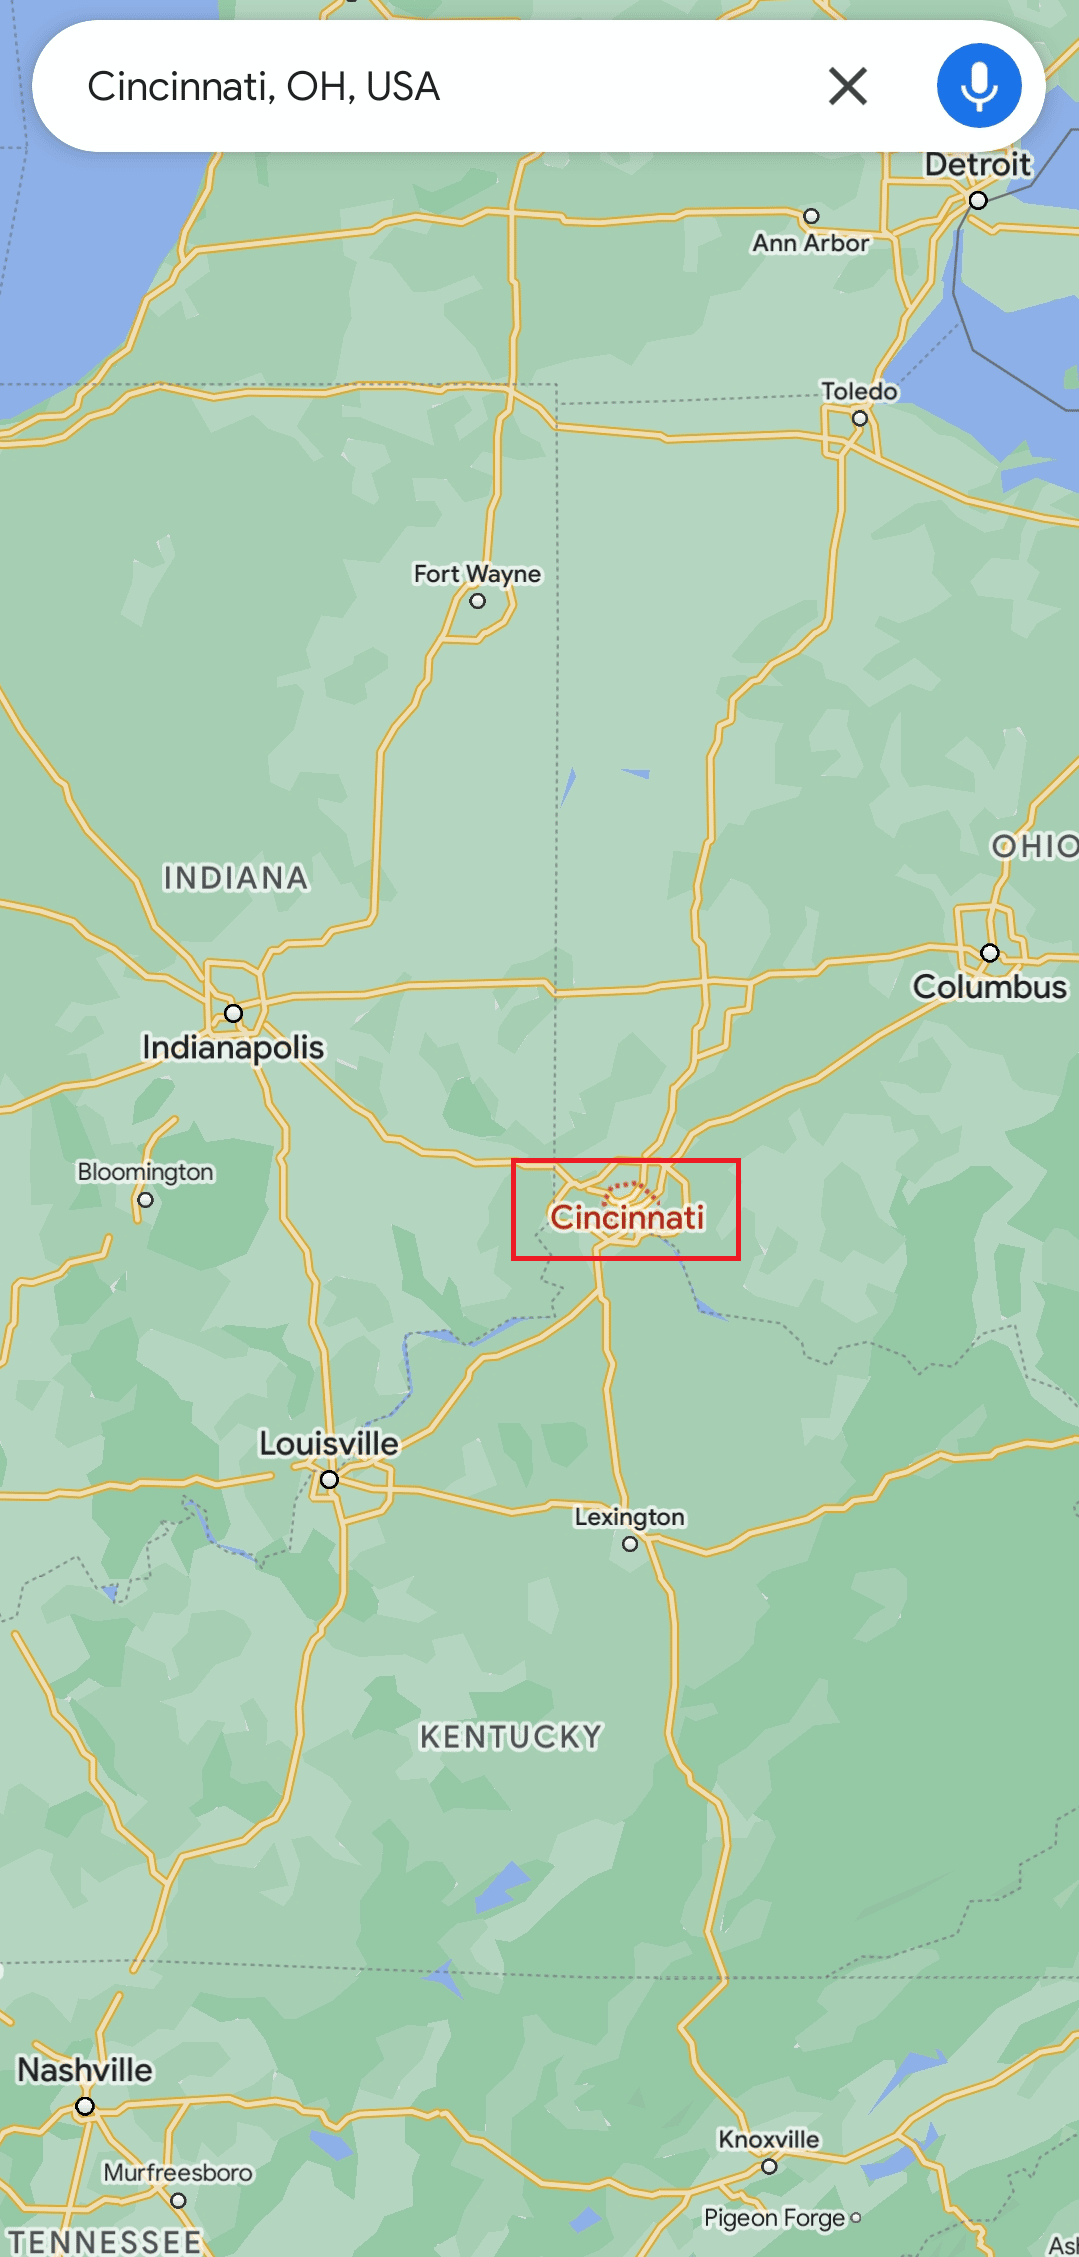 Finden Sie Cincinnati auf der Karte | auf halber Strecke zwischen zwei Orten